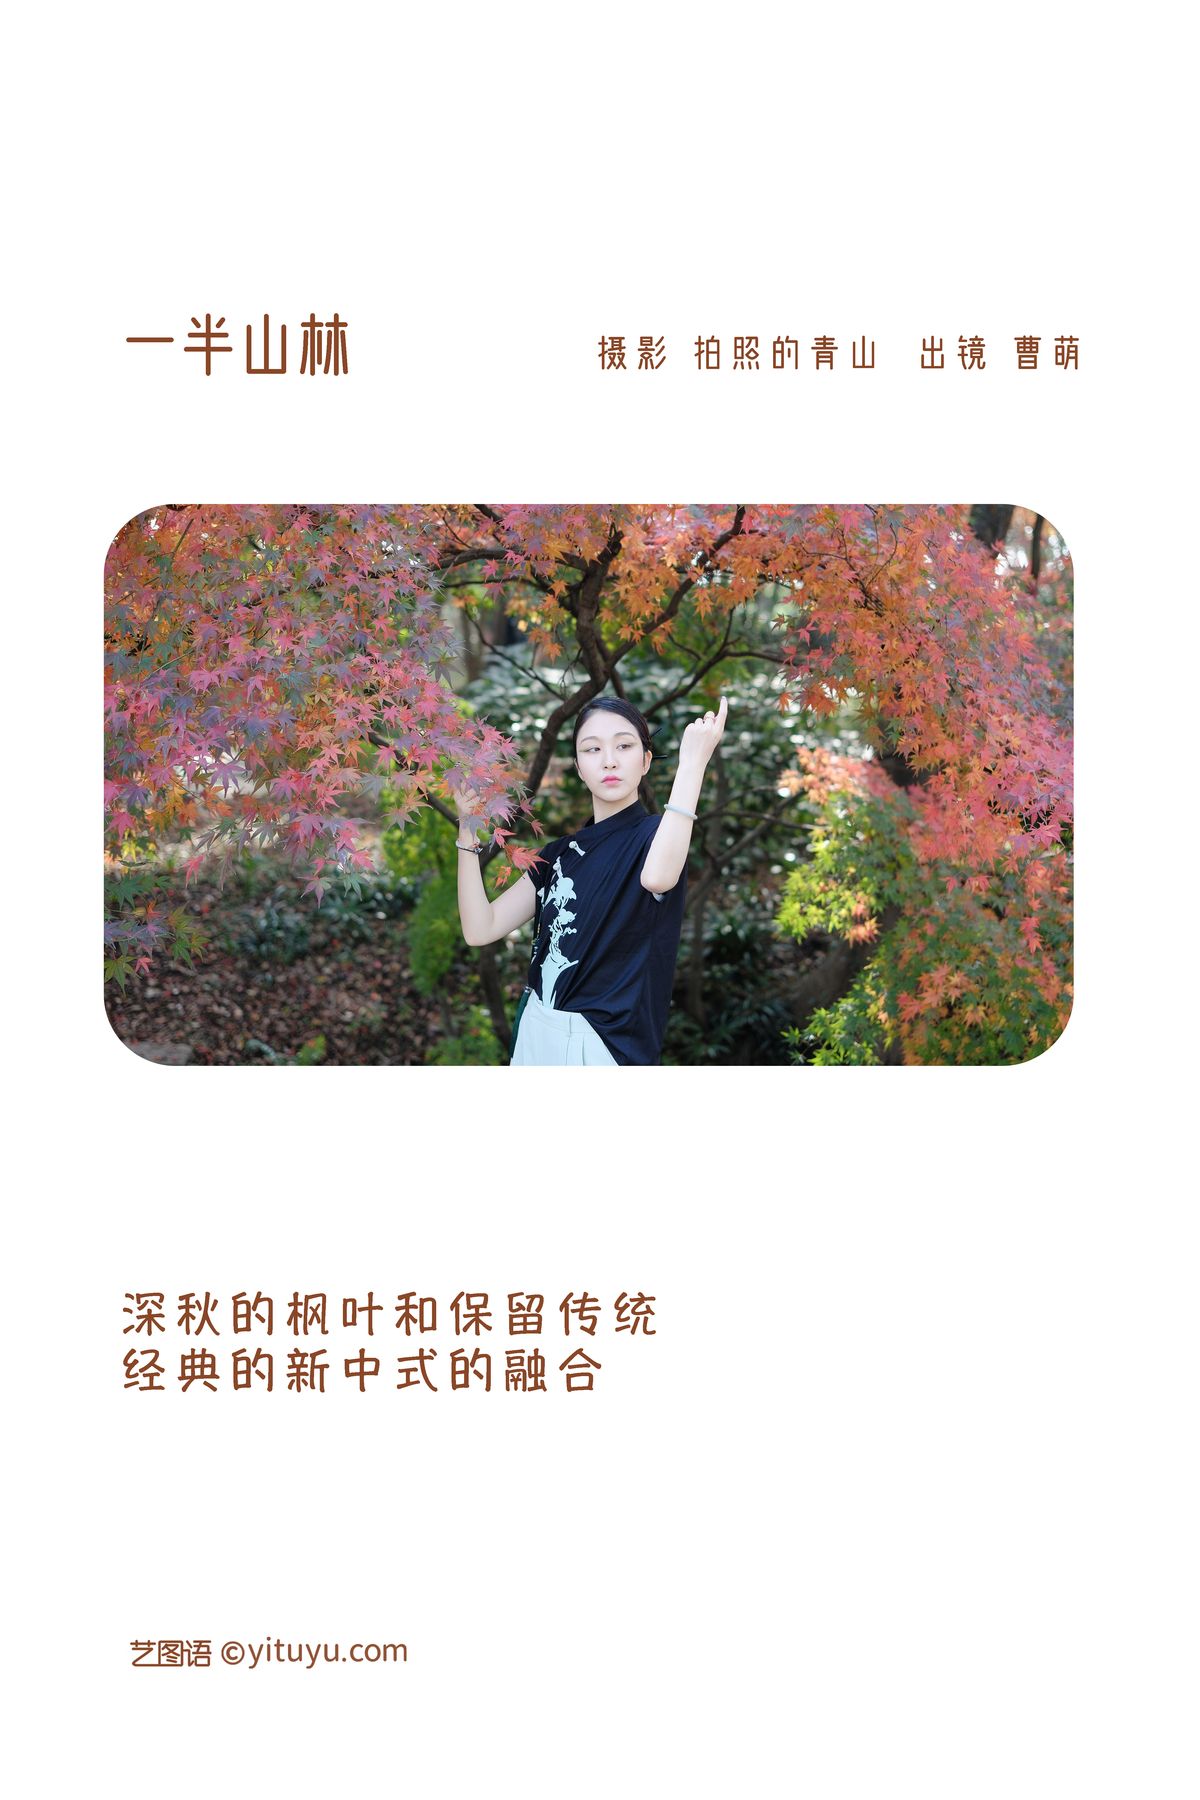 YiTuYu艺图语 Vol 3258 Cao Meng 0001 2861718020.jpg